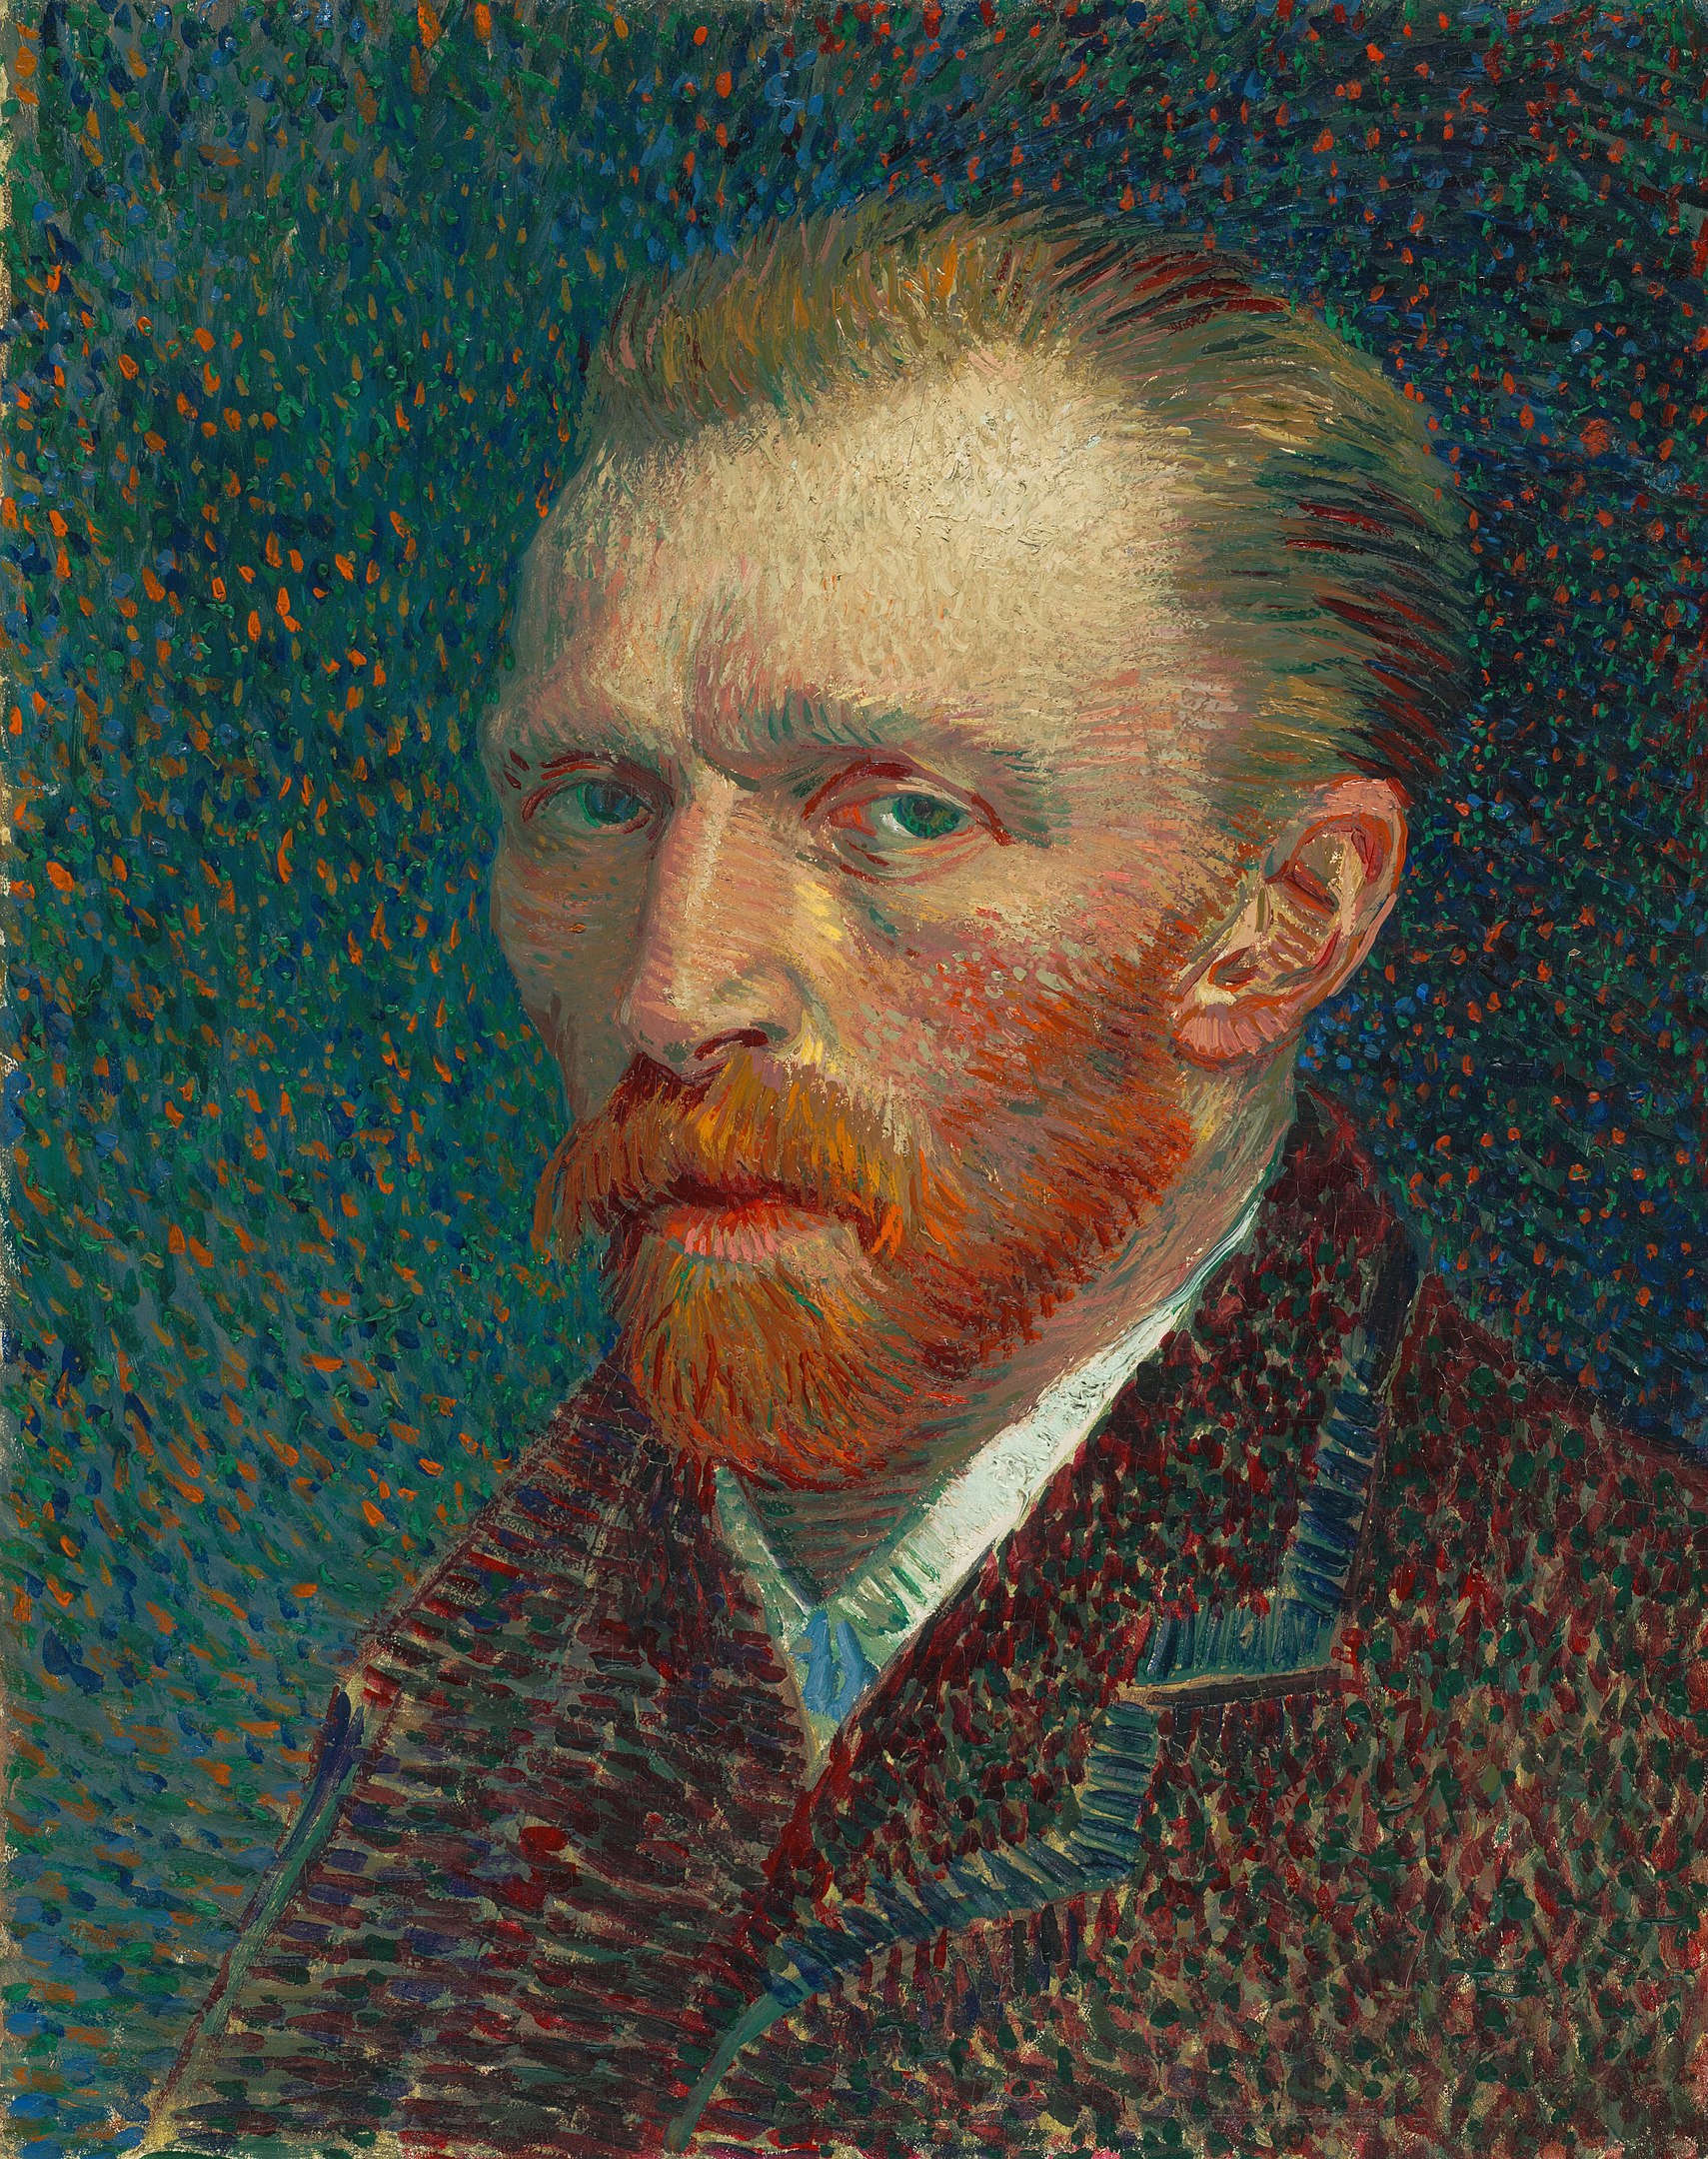 Ο κλεμμένος πίνακας του Van Gogh που βρέθηκε σε τσάντα του ΙΚΕΑ θα εκτεθεί για πρώτη φορά στο κοινό